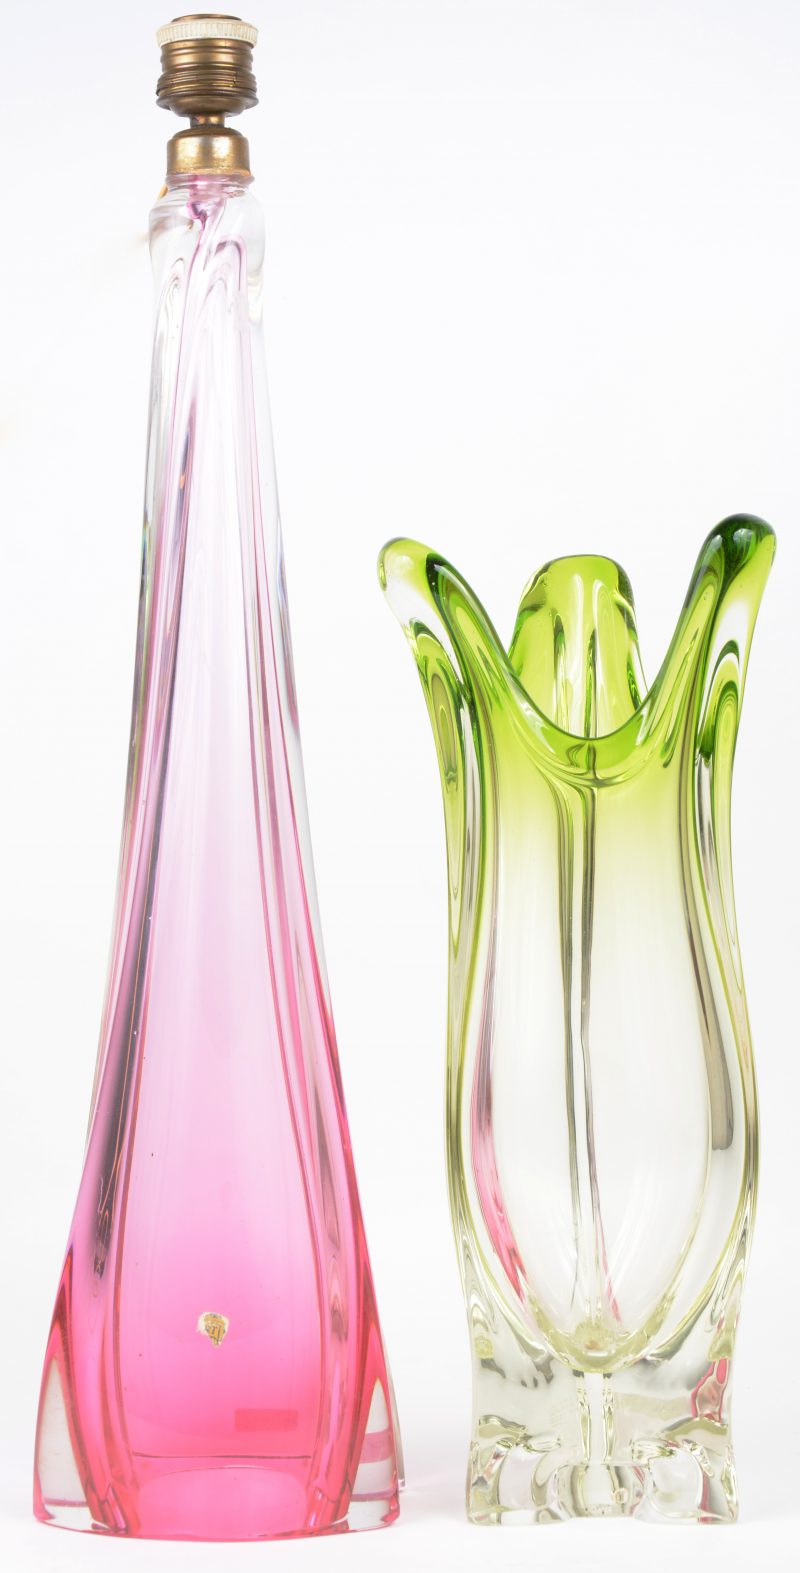 Een vaas en een lampenvoet in resp groen en roze kristal.